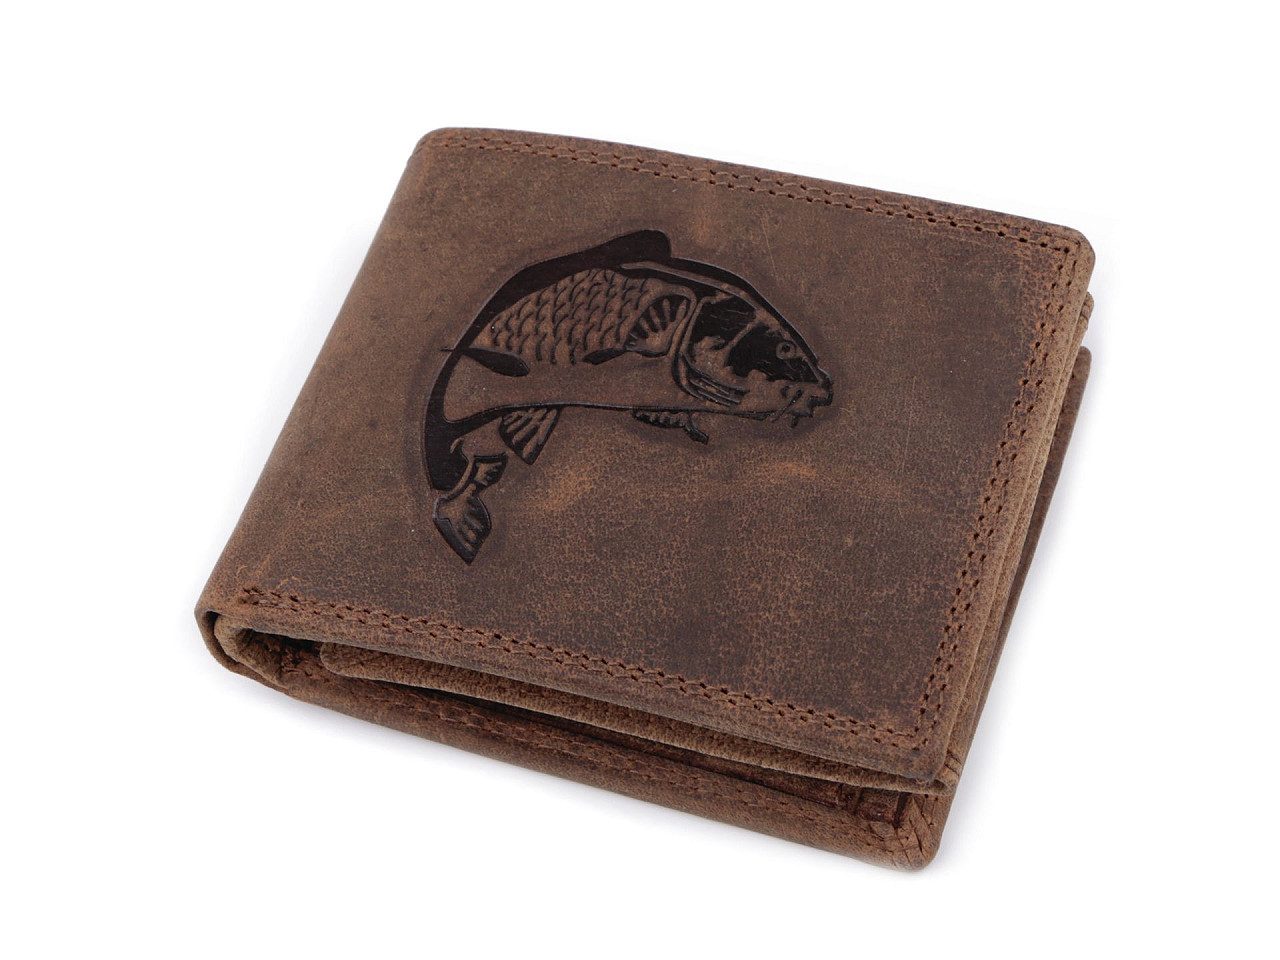 Pánská peněženka kožená pro myslivce, rybáře, motorkáře 9,5x12 cm, barva 15 hnědá světlá ryba